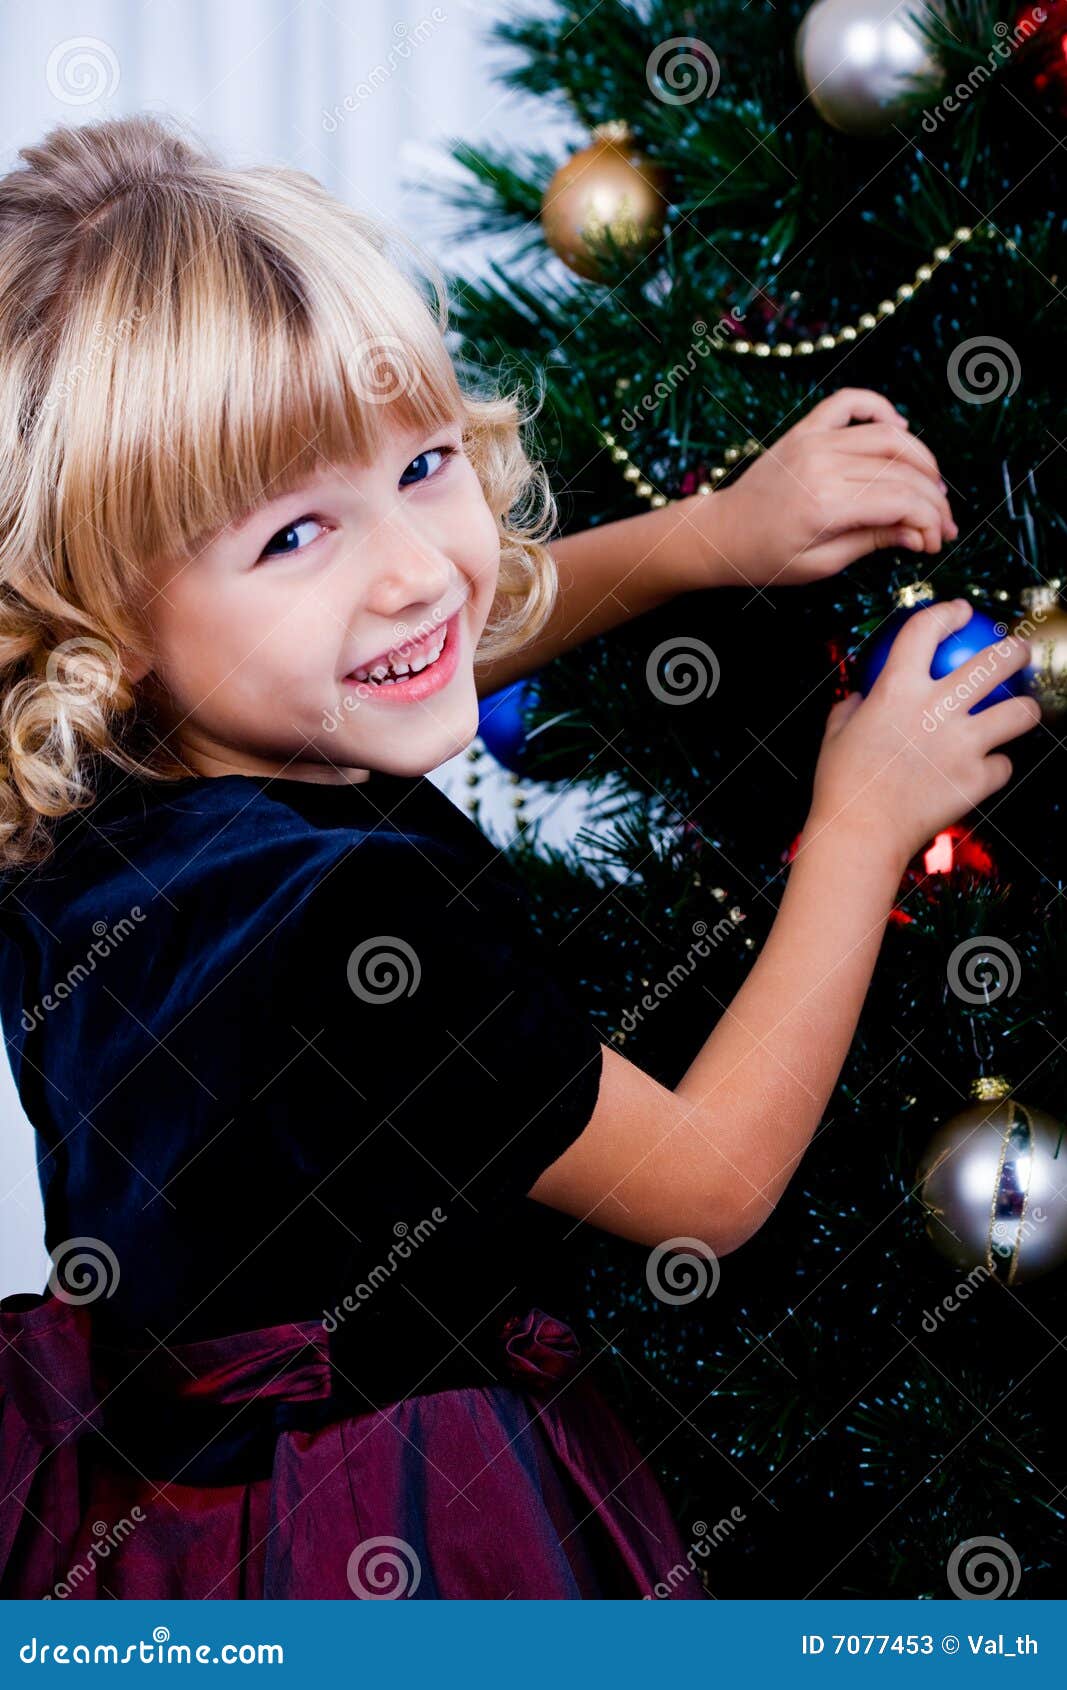 Adornamiento del árbol de navidad 6. Una muchacha que adorna el árbol de navidad